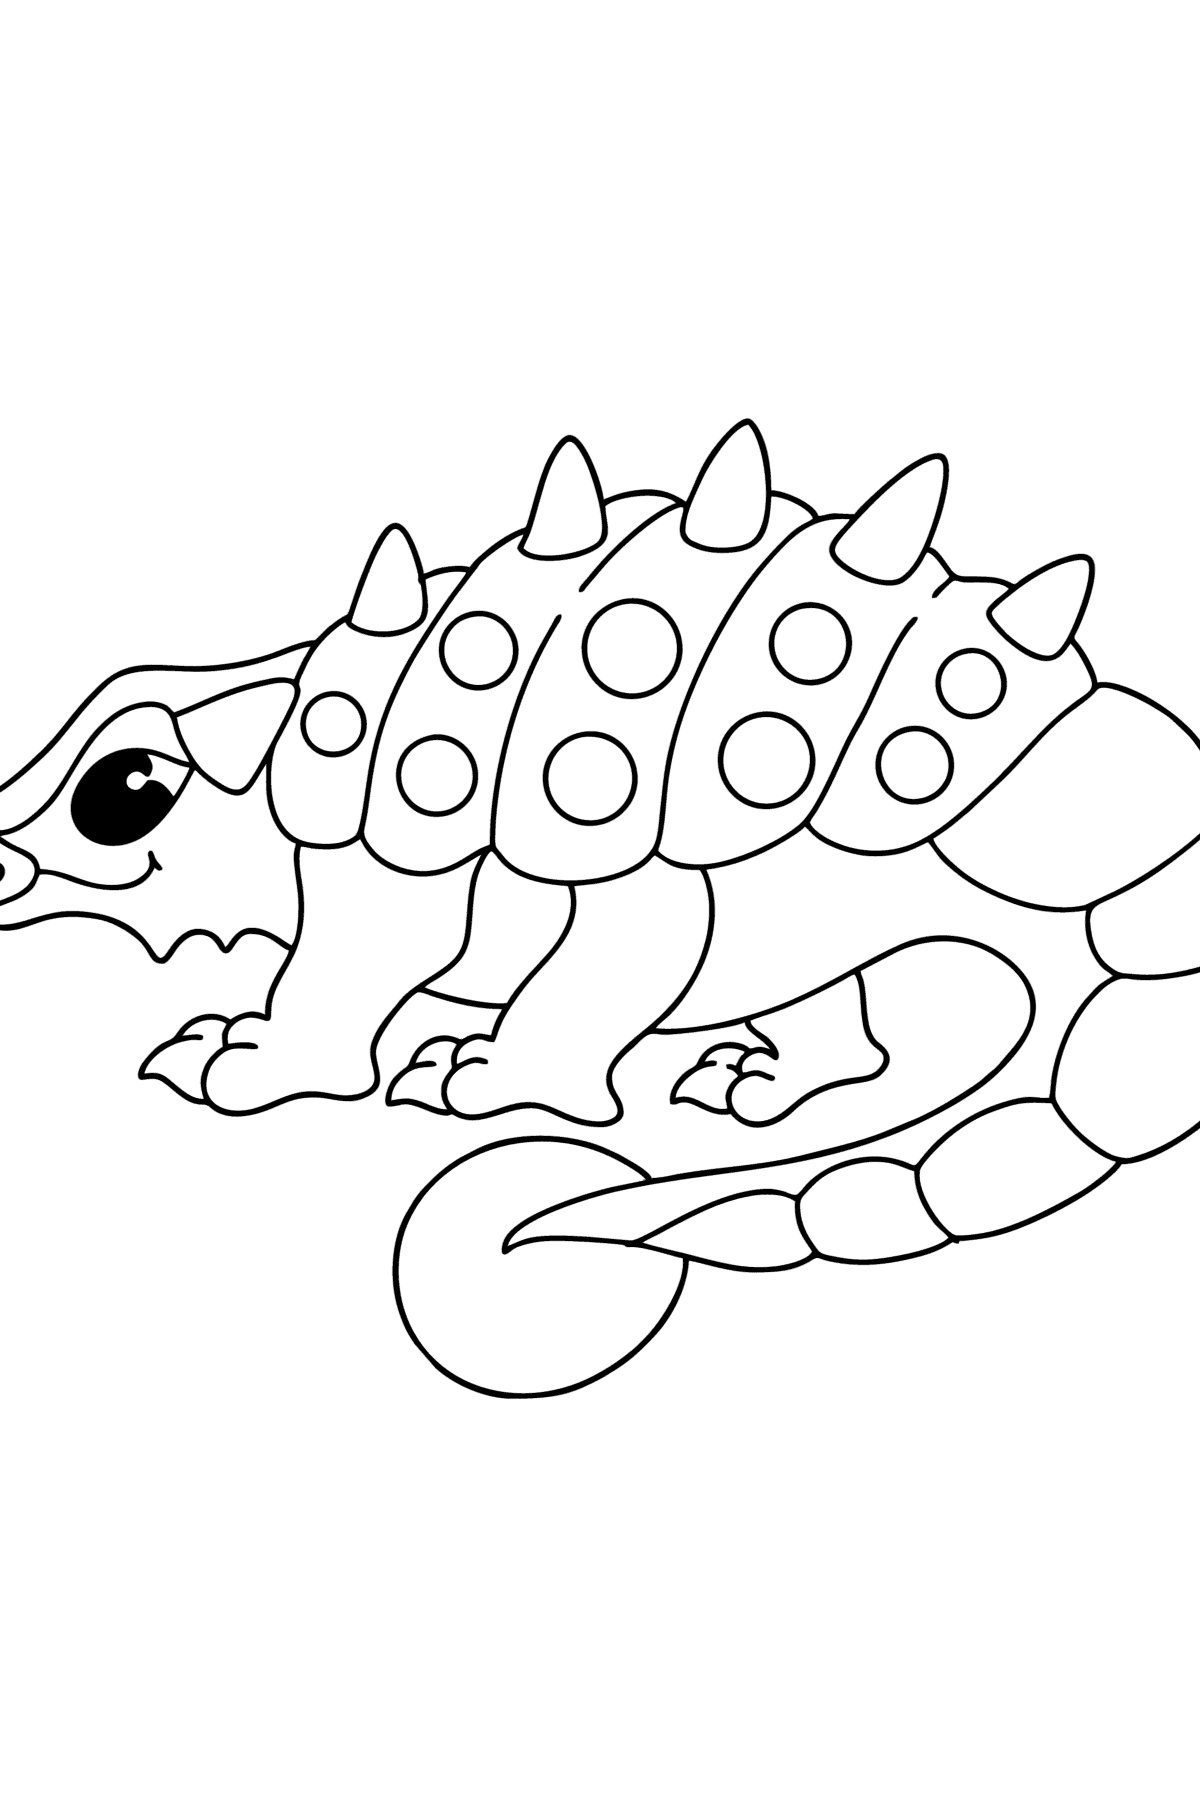 Coloriage Ankylosaure - Coloriages pour les Enfants